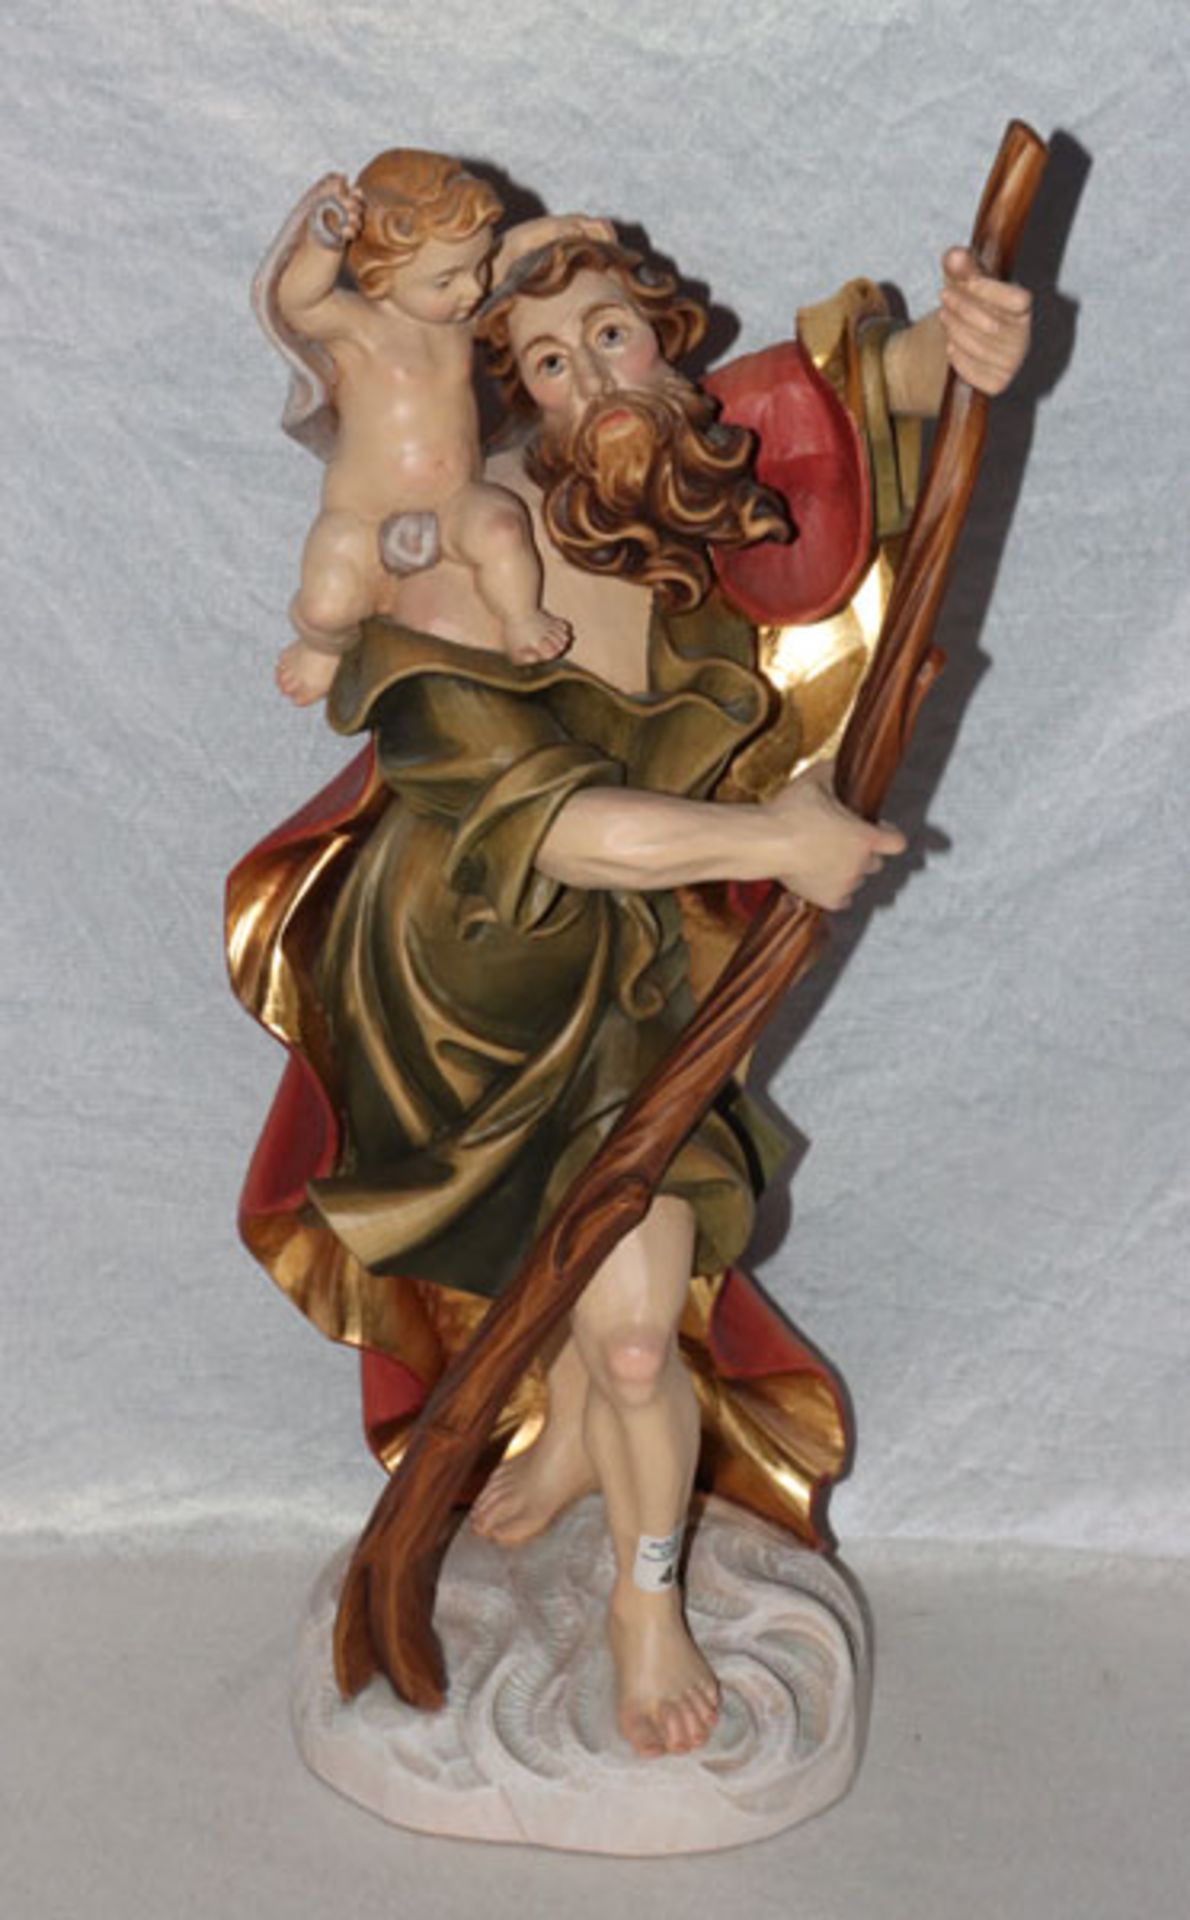 Holz Figurenskulptur 'Heiliger Christophorus', farbig gefaßt, H 58 cm, B 24 cm, T 19 cm